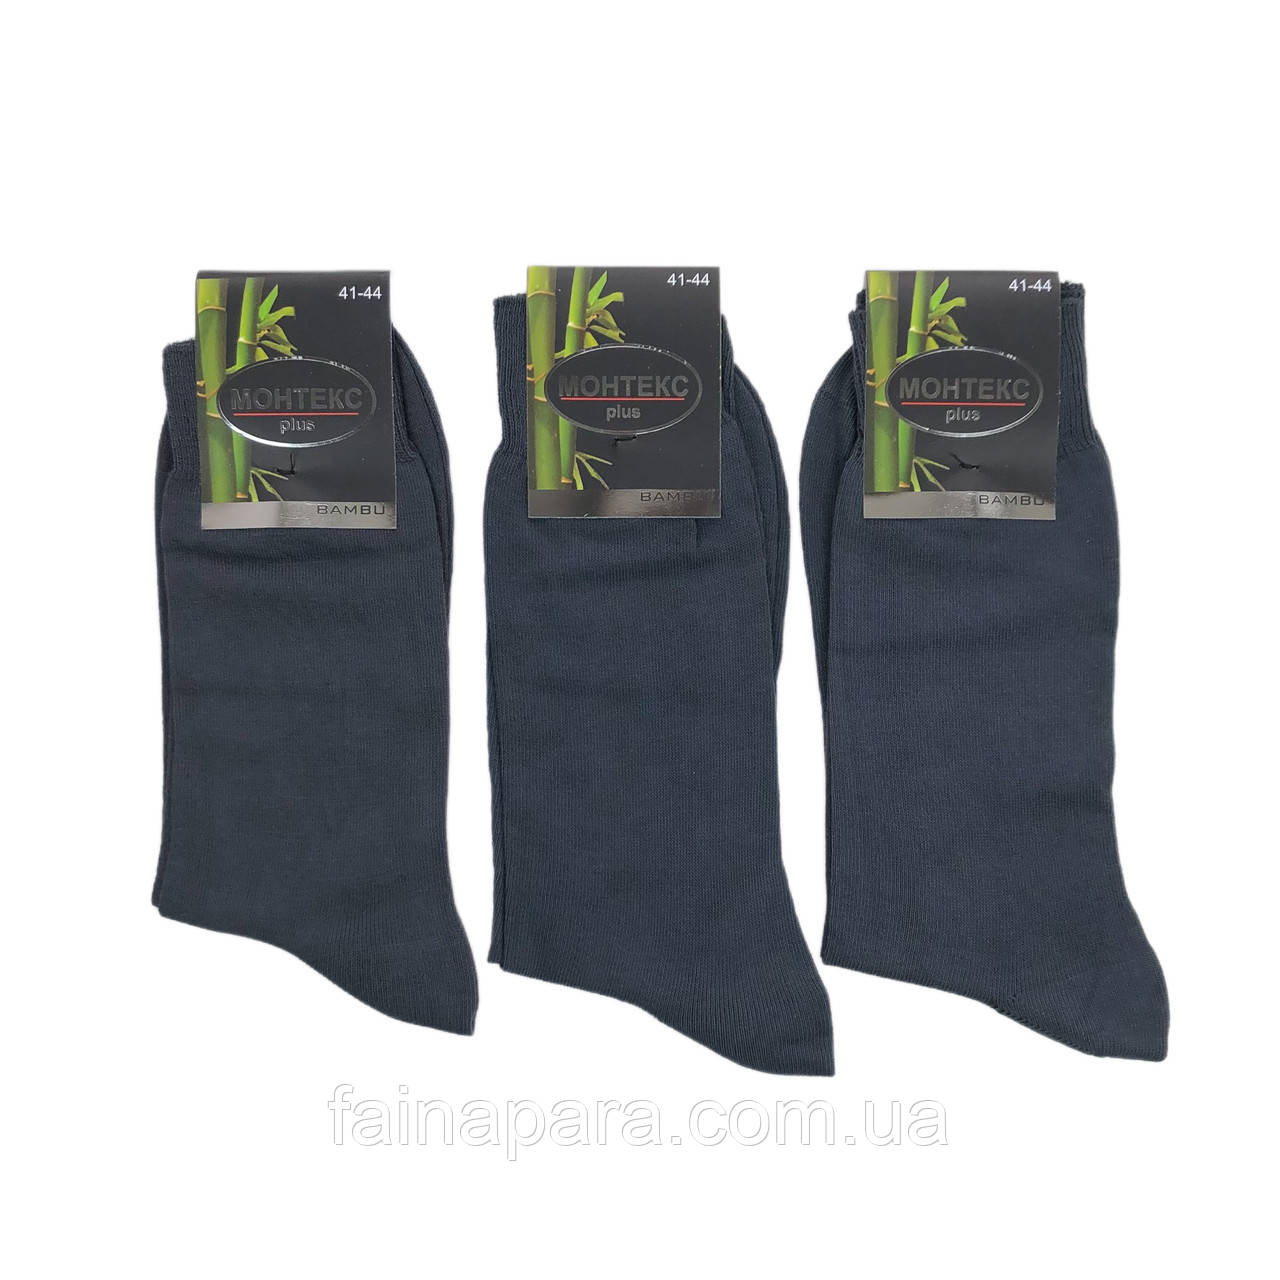 Бамбукові безшовні чоловічі шкарпетки високі тонкі Монтекс (сірий)